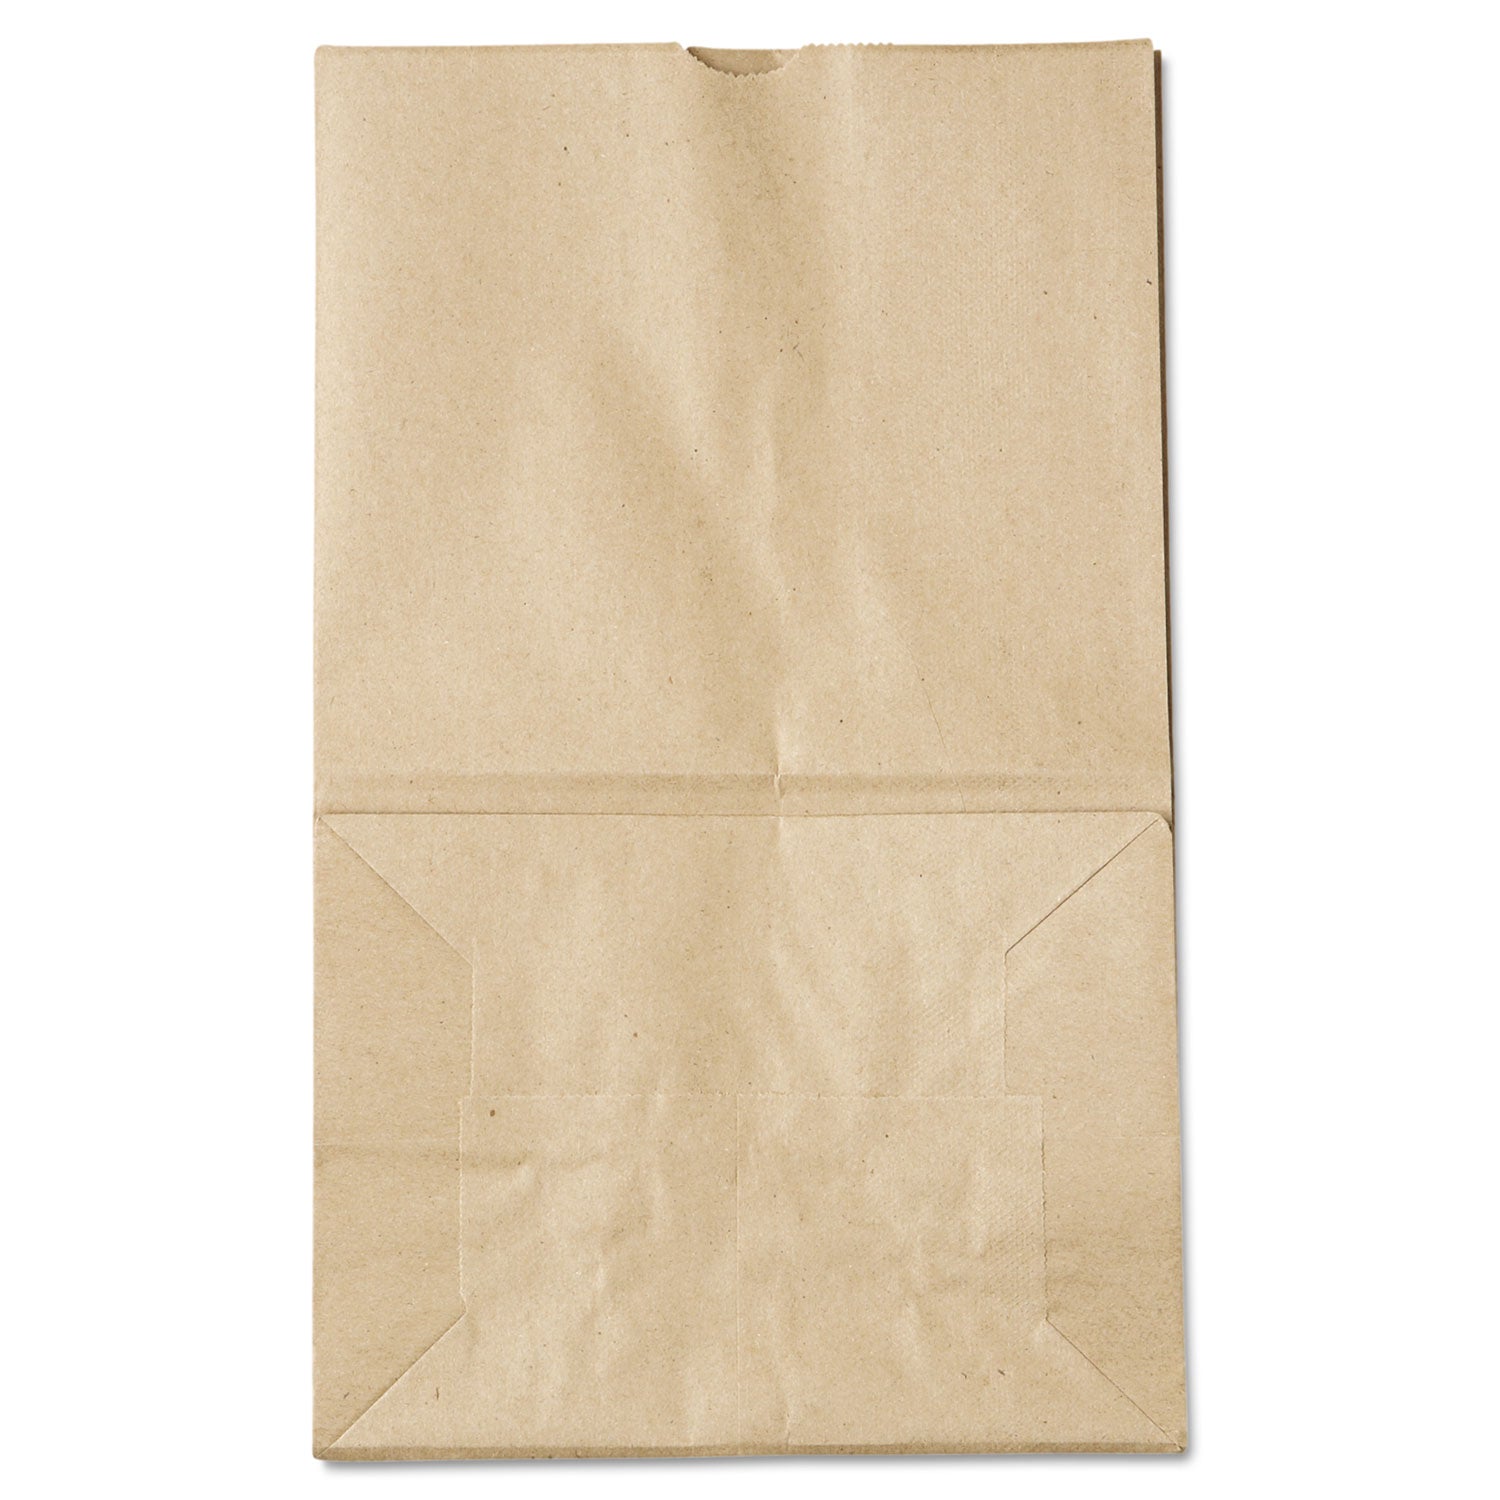 grocery-paper-bags-40-lb-capacity-#20-squat-825-x-594-x-1338-kraft-500-bags_baggk20s500 - 2